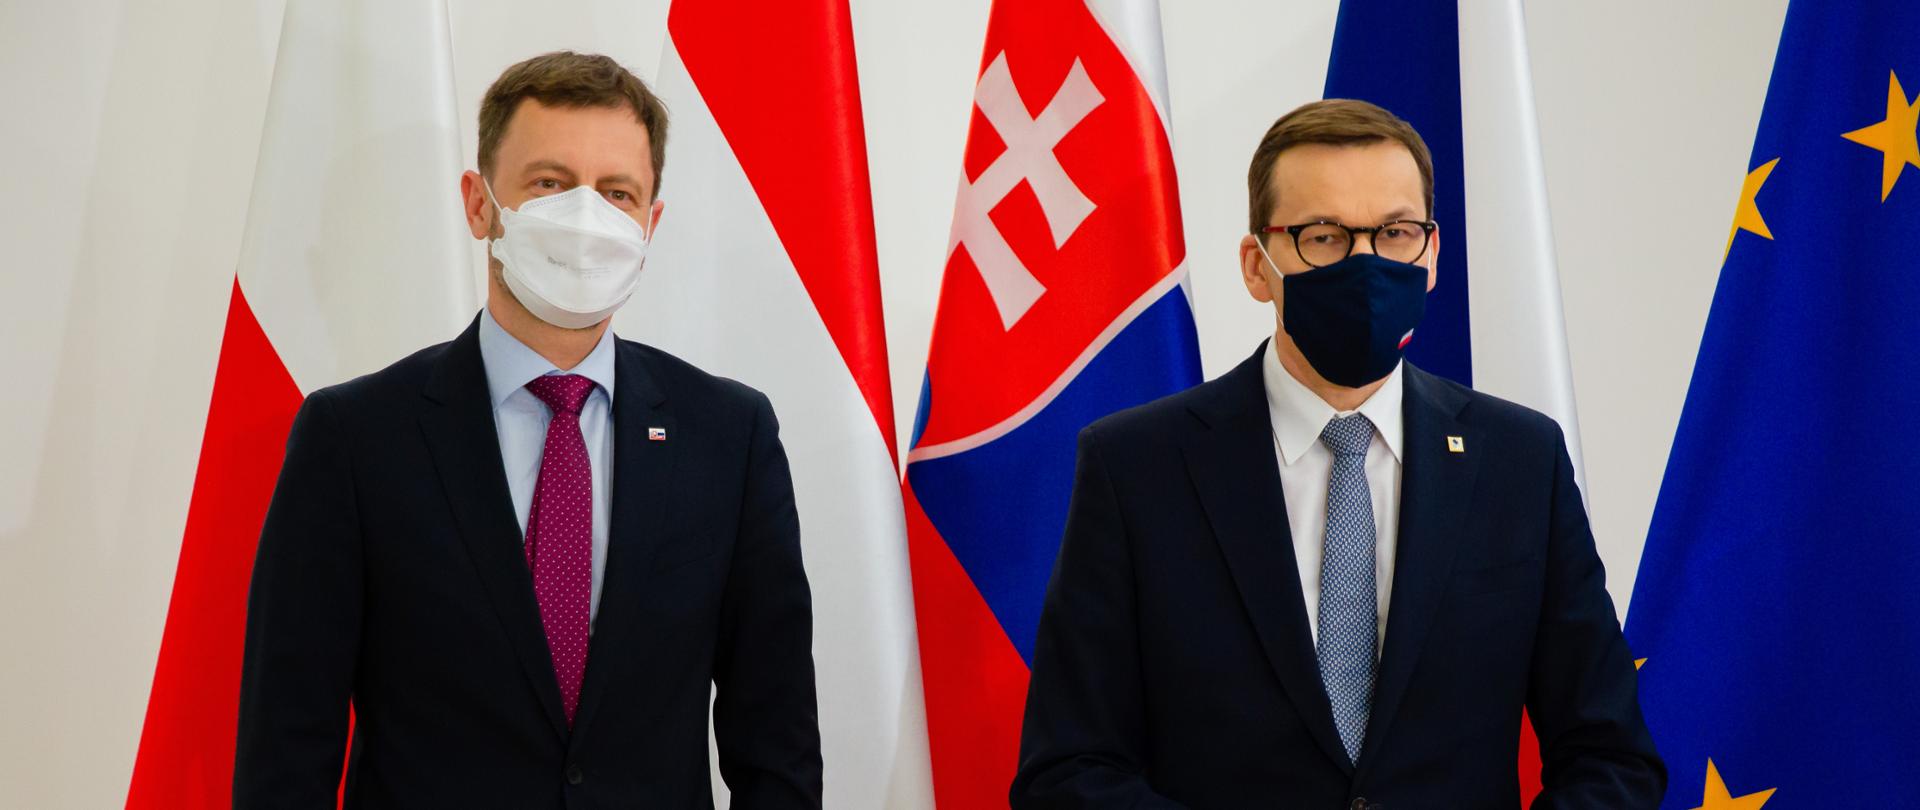 Premier Polski Mateusz Morawiecki i premier Słowacji Eduard Heger